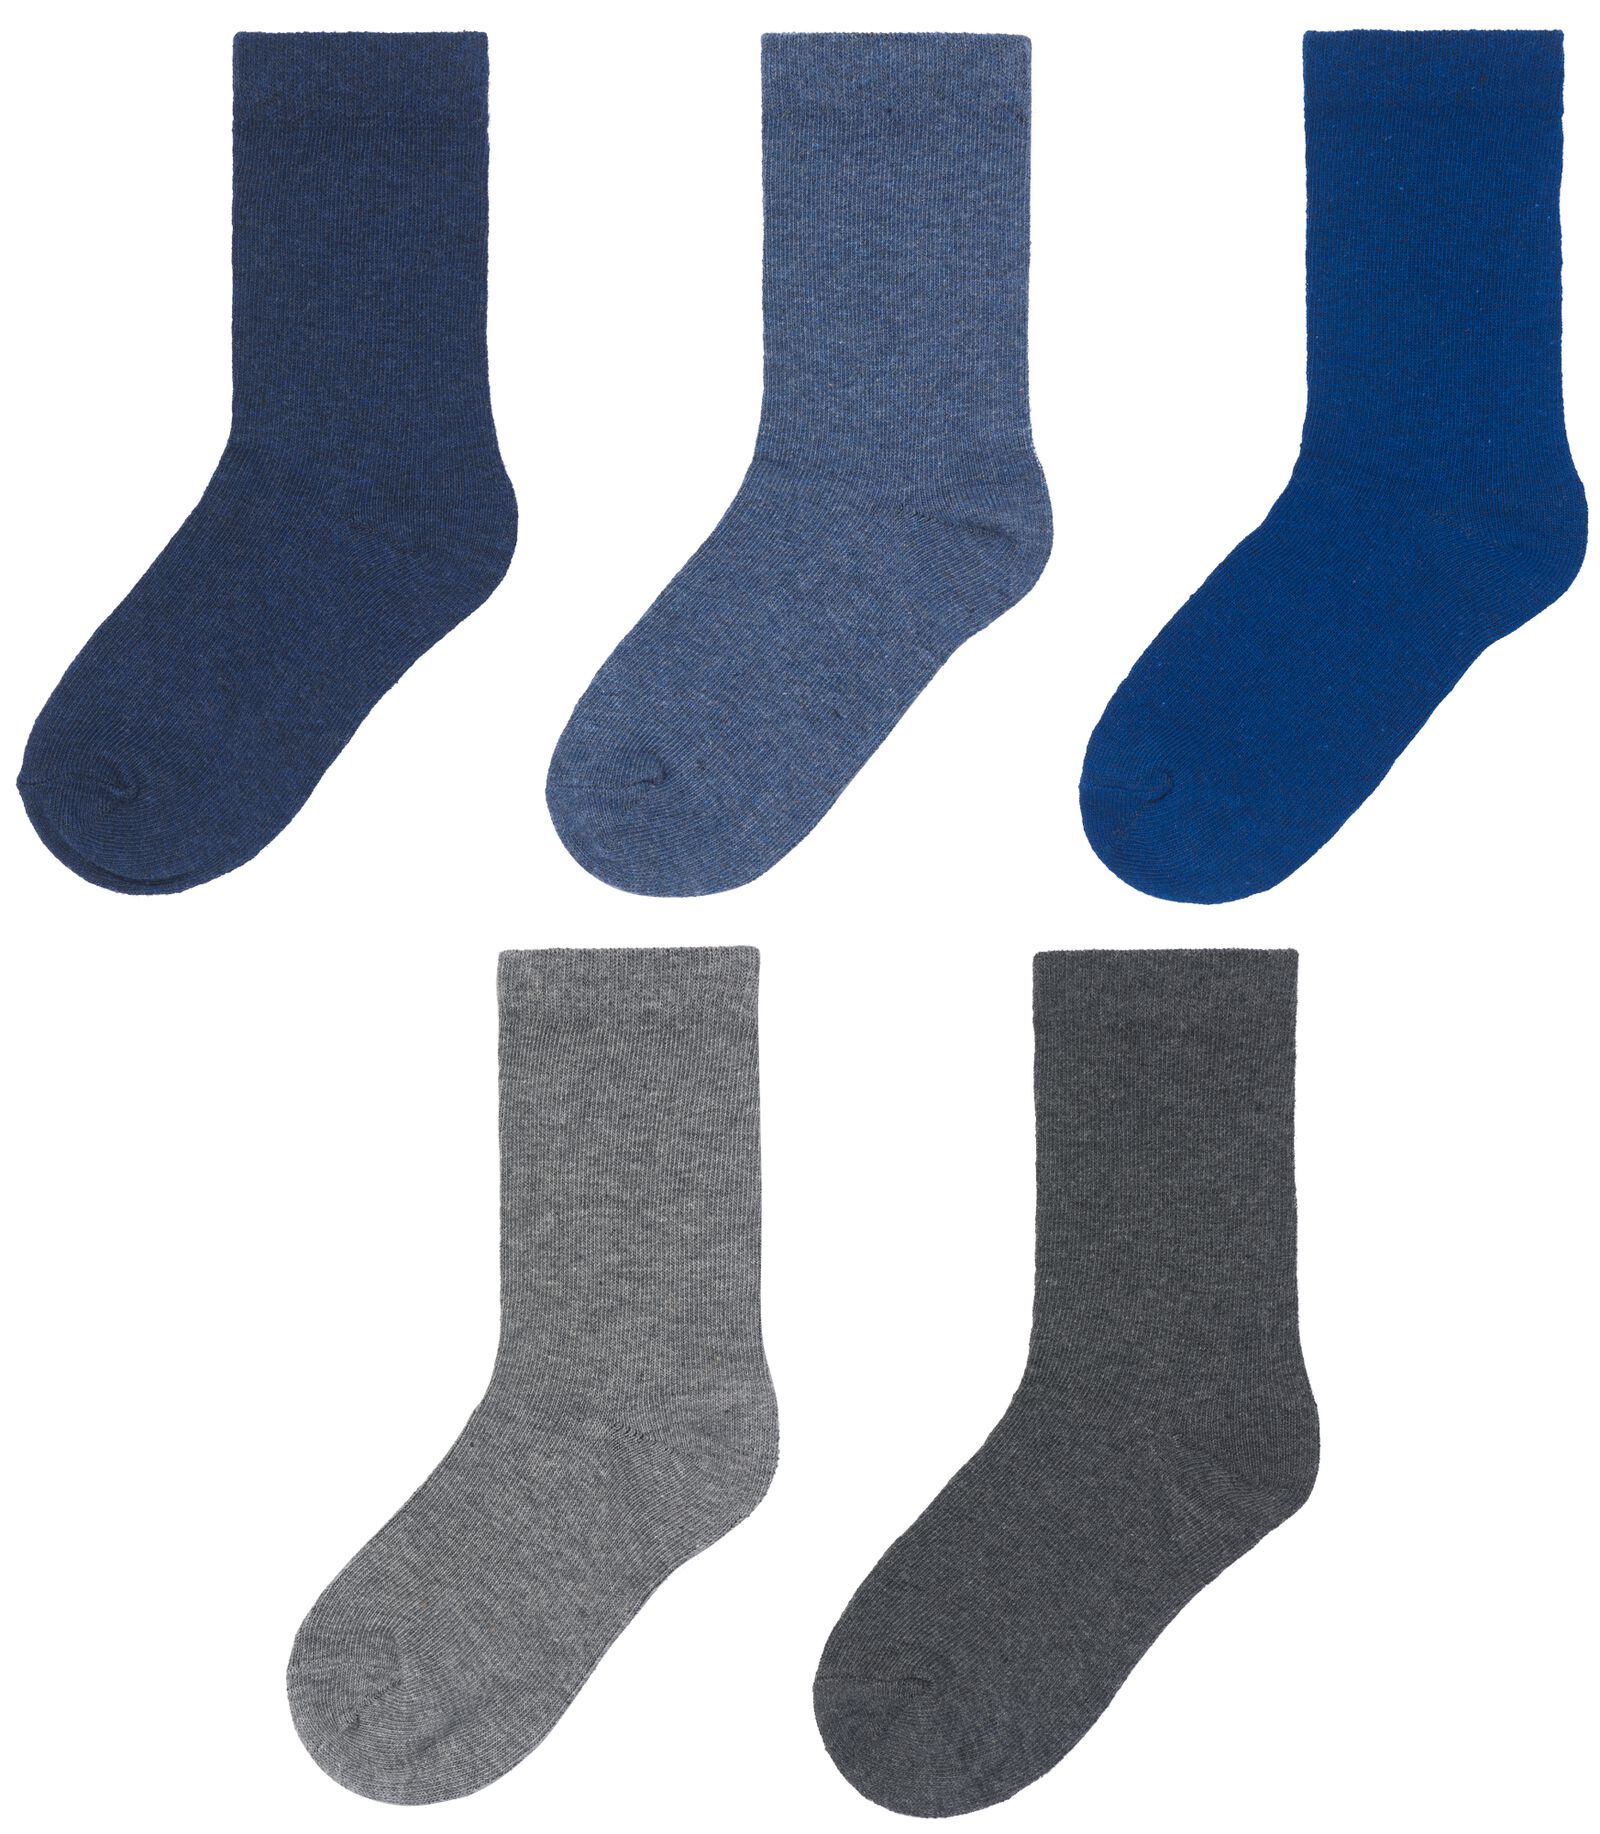 kinder sokken met katoen - 5 paar blauw 35/38 - 4360074 - HEMA